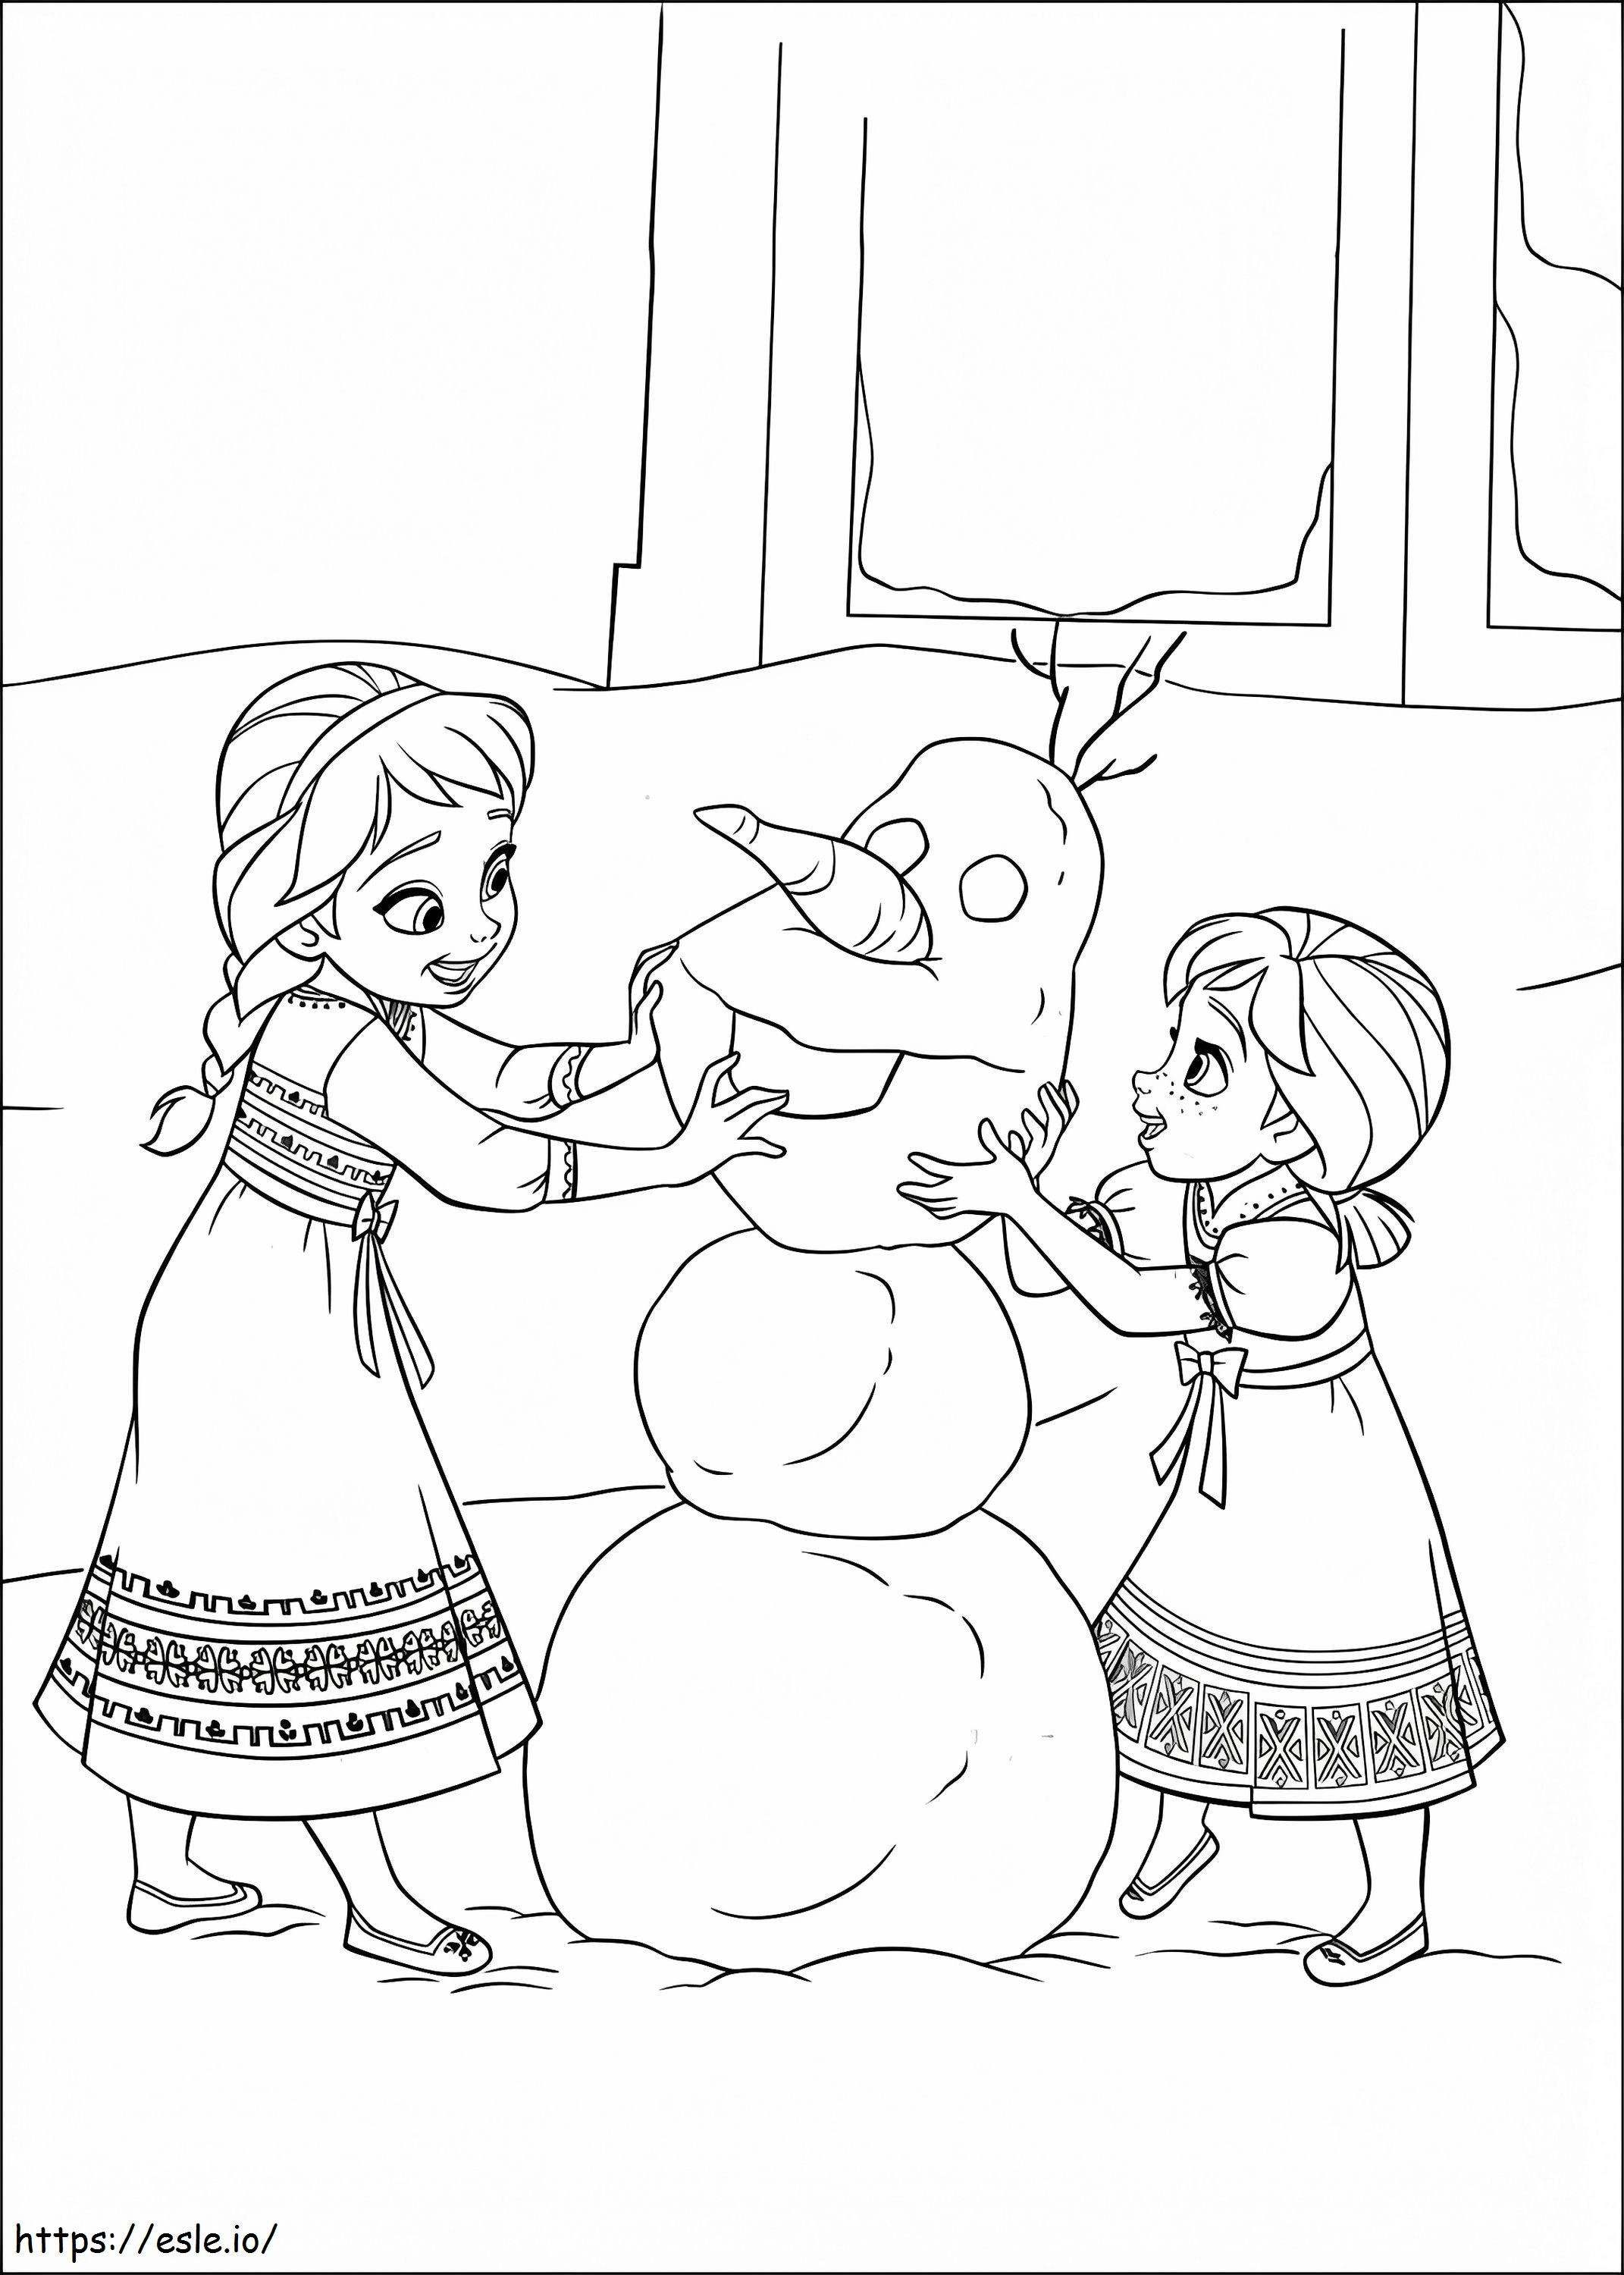  Elsa és Anna épület Olaf A4 kifestő